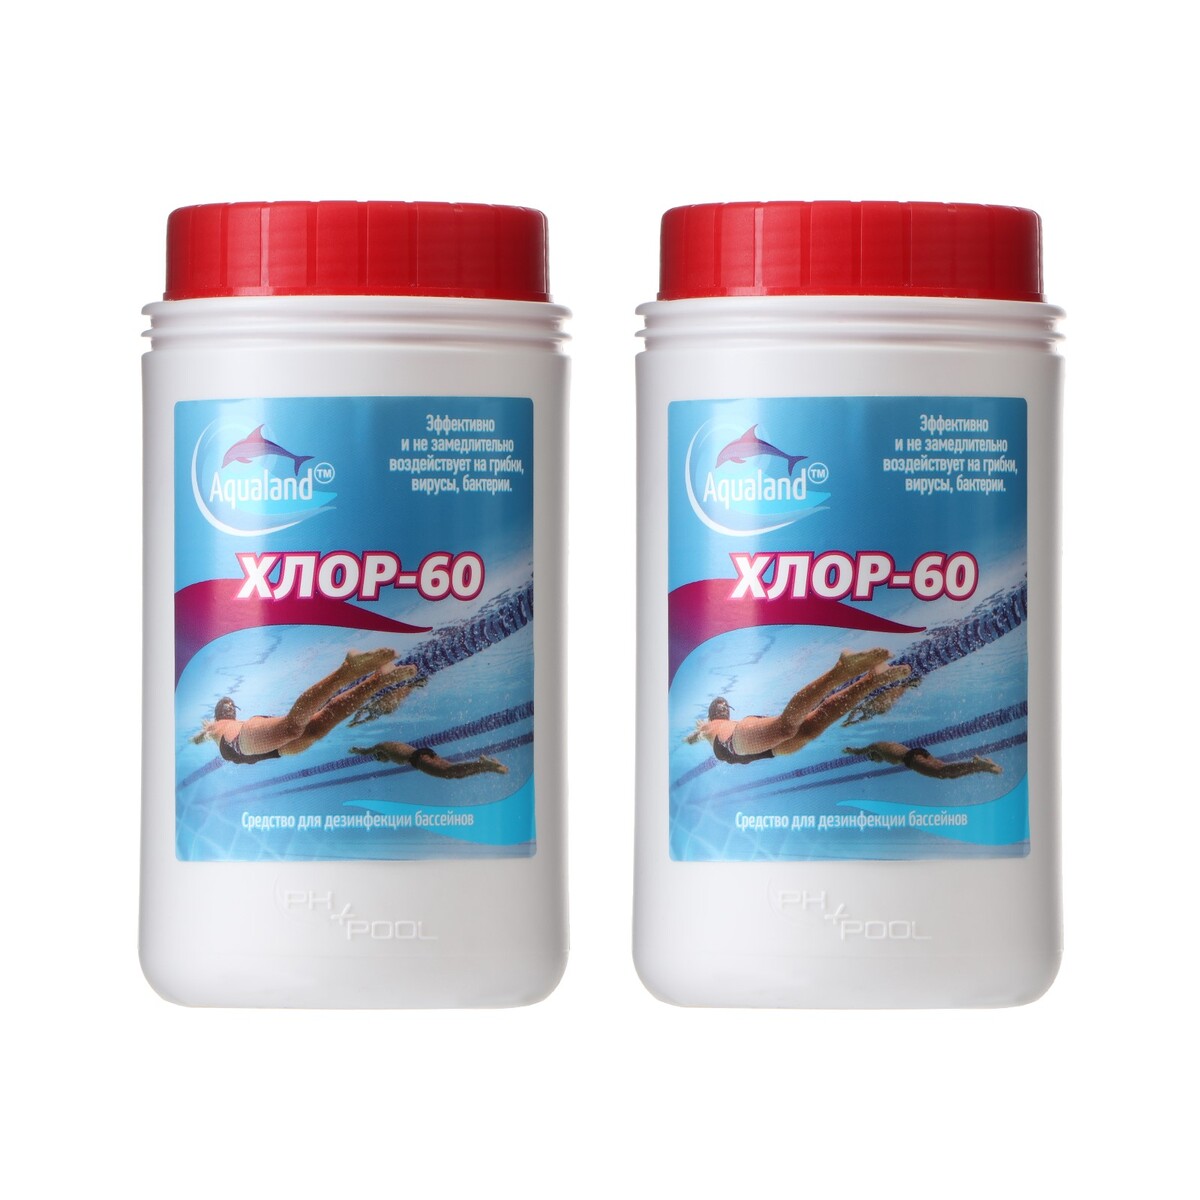 Дезинфицирующее средство aqualand хлор-60, по 1 кг, набор 2 шт дезинфицирующие средство aqualand хлор 60 гранулы 1 кг